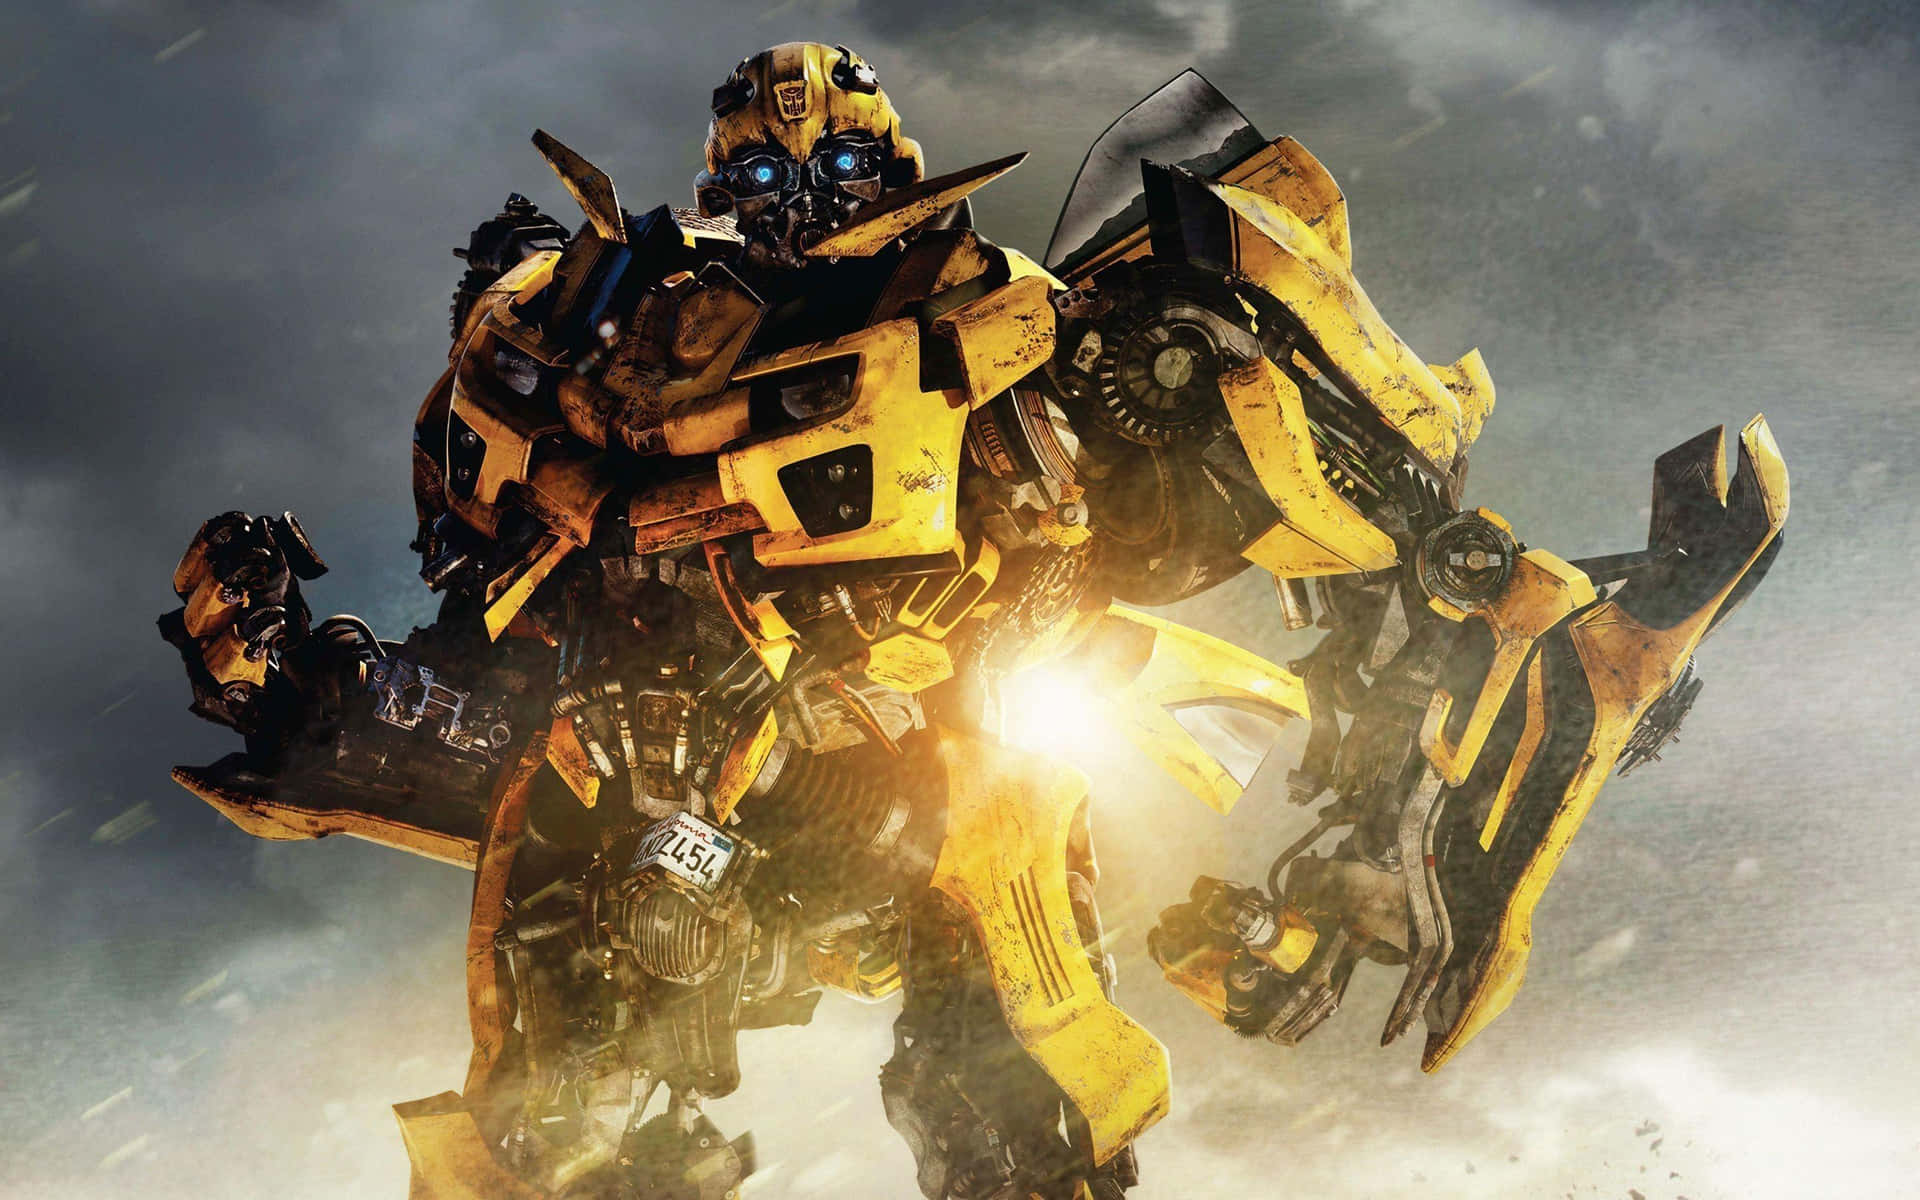 Den elskede gule Autobot Bumblebee fra Transformers-franchisen invaderer din skrivebord. Wallpaper